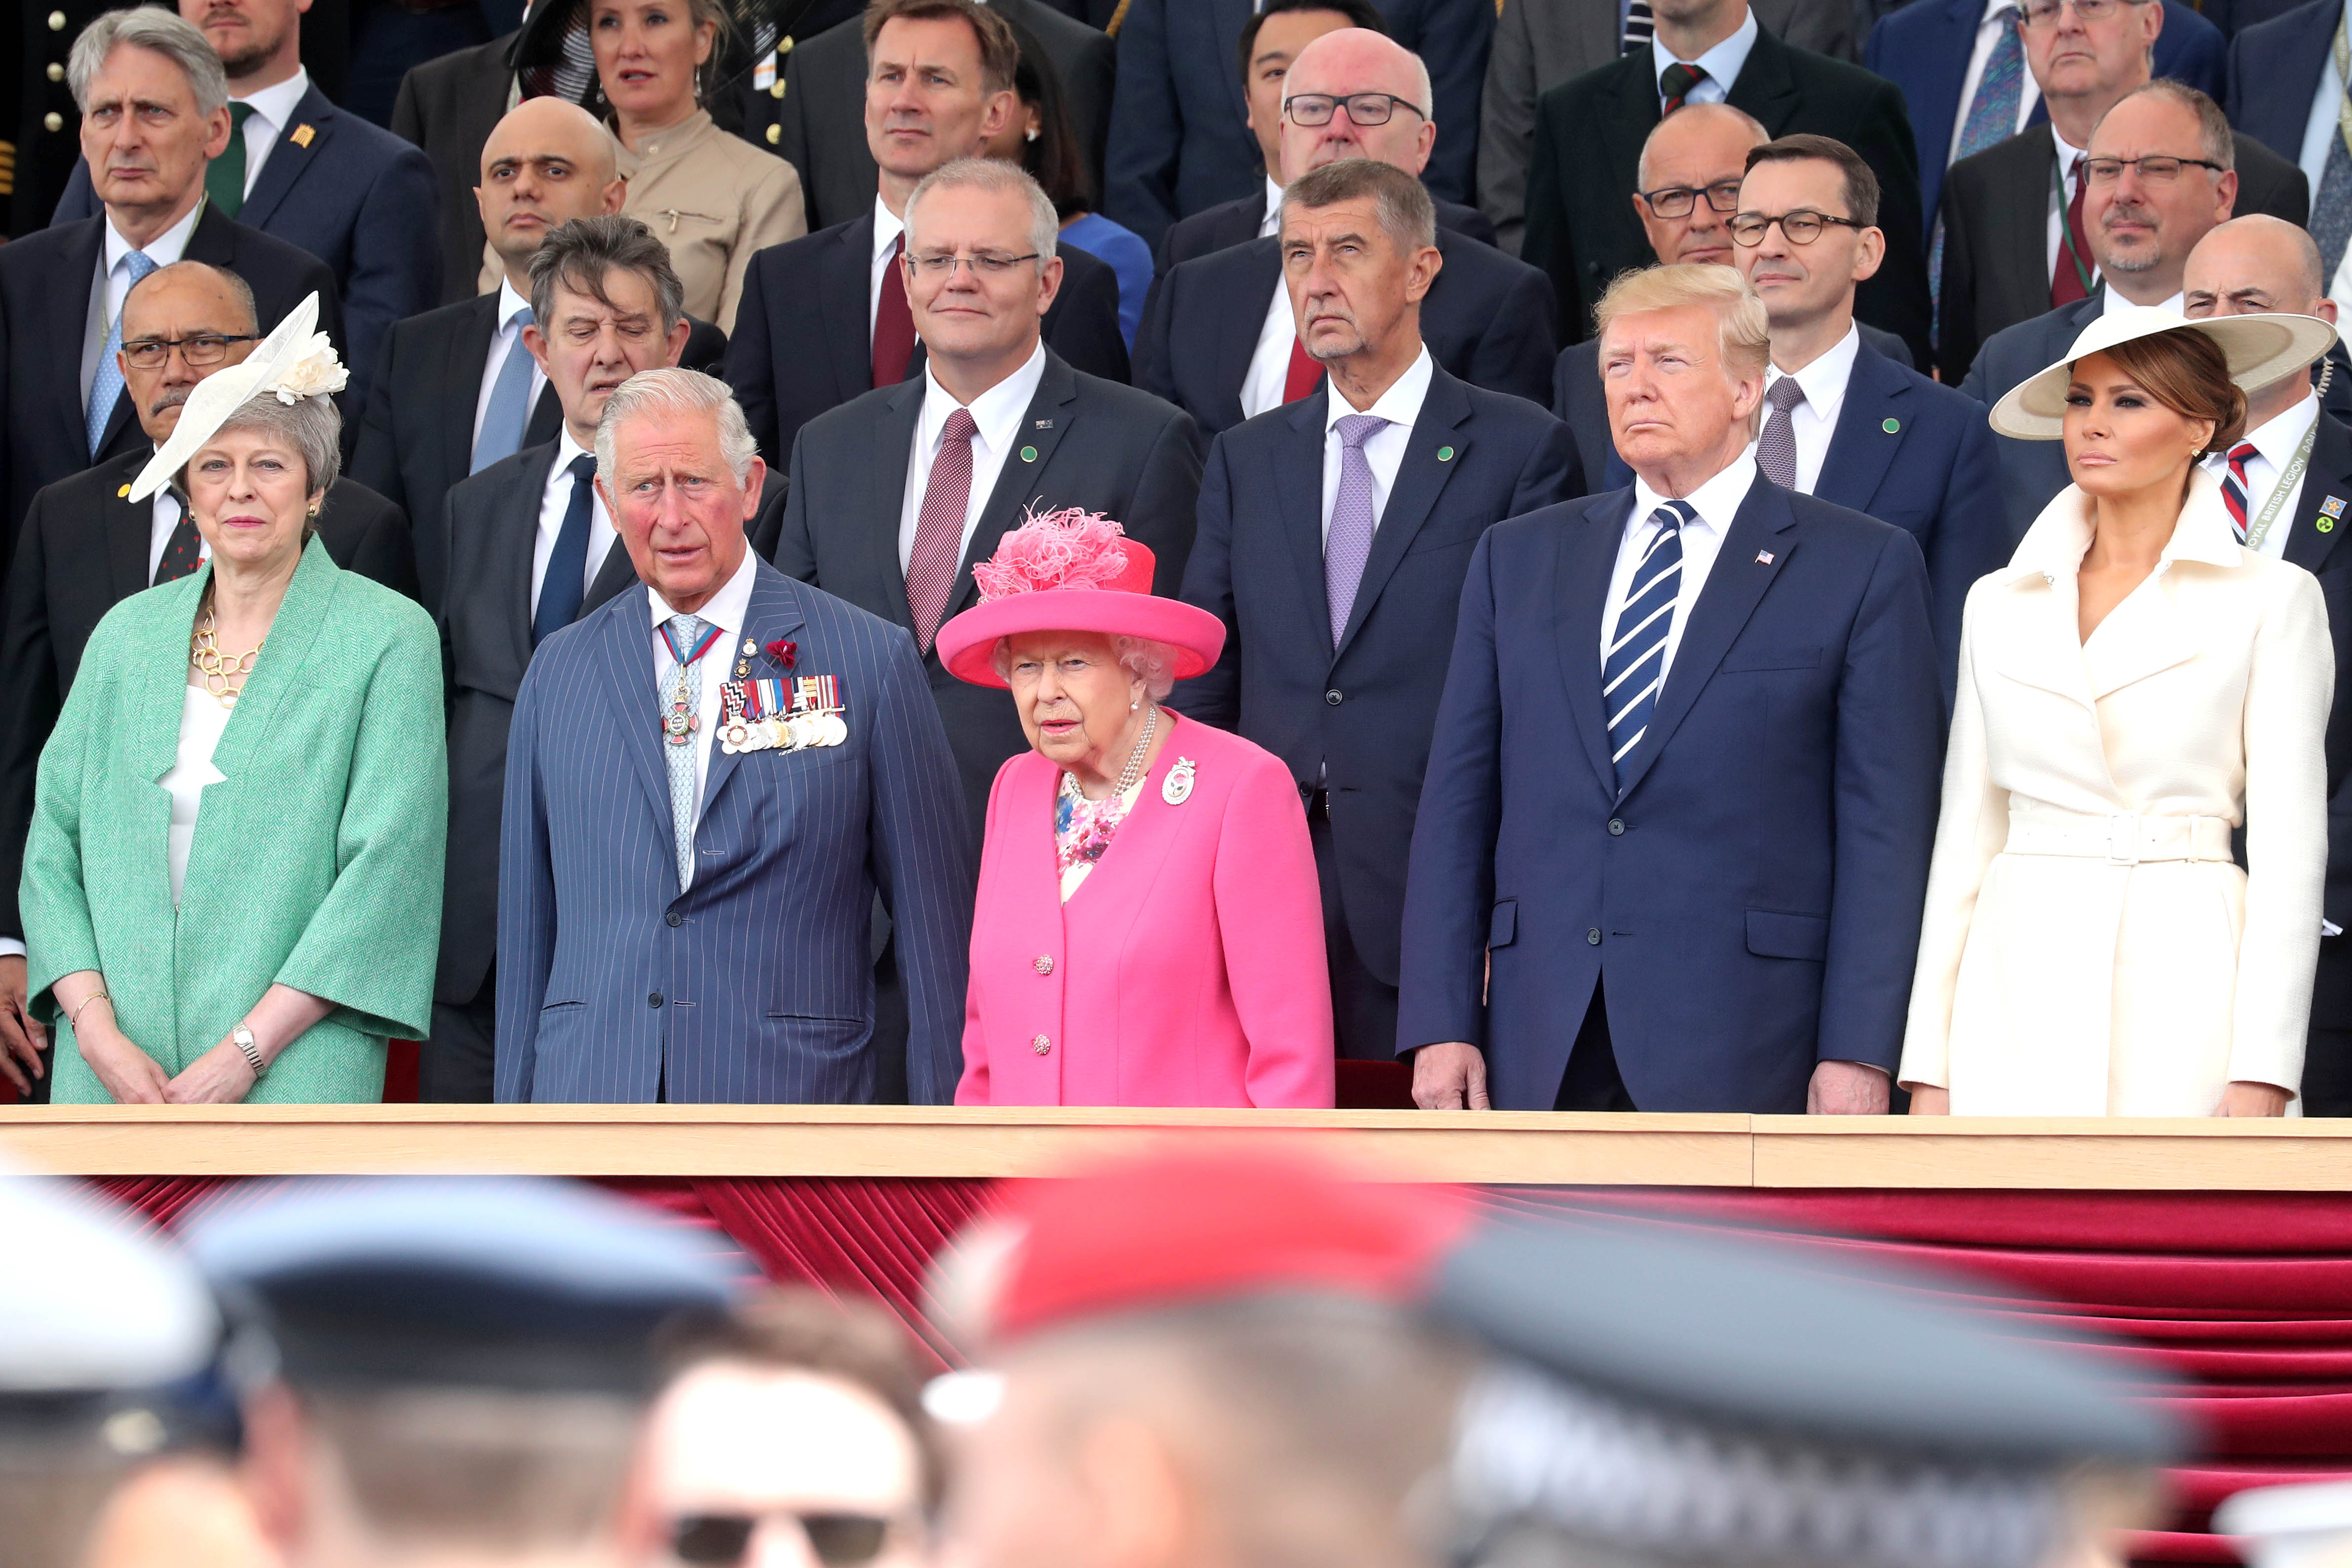 El 5 de junio de 2019, la entonces primera ministra del Reino Unido Theresa May, el príncipe de Gales, la reina Isabel II, el entonces presidente Donald Trump y la primera dama Melania Trump asistieron a una conmemoración del Día D en Portsmouth, Inglaterra